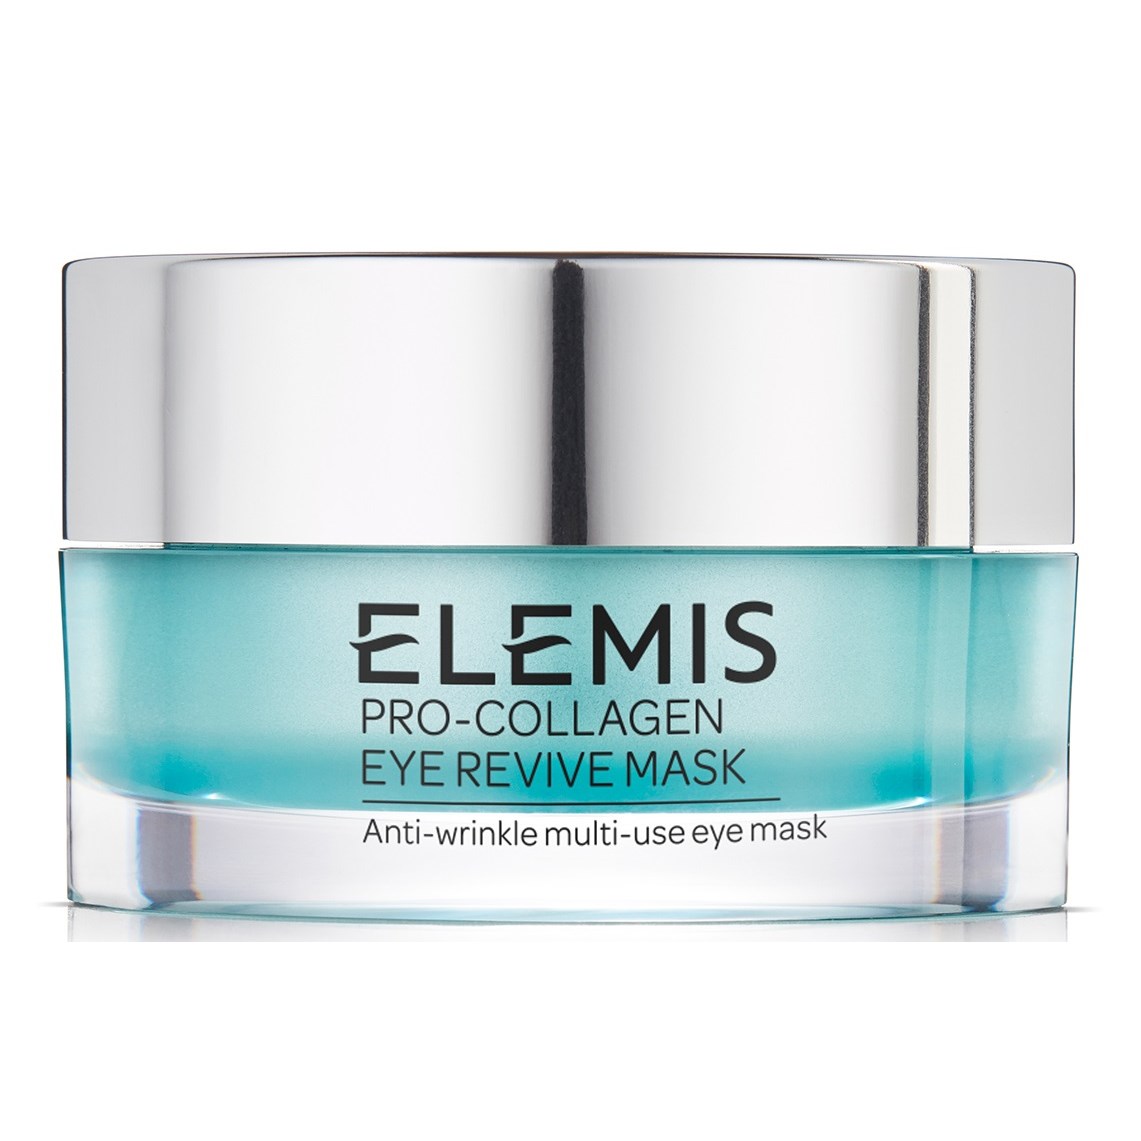 Läs mer om Elemis Pro-Collagen Eye Revive Mask